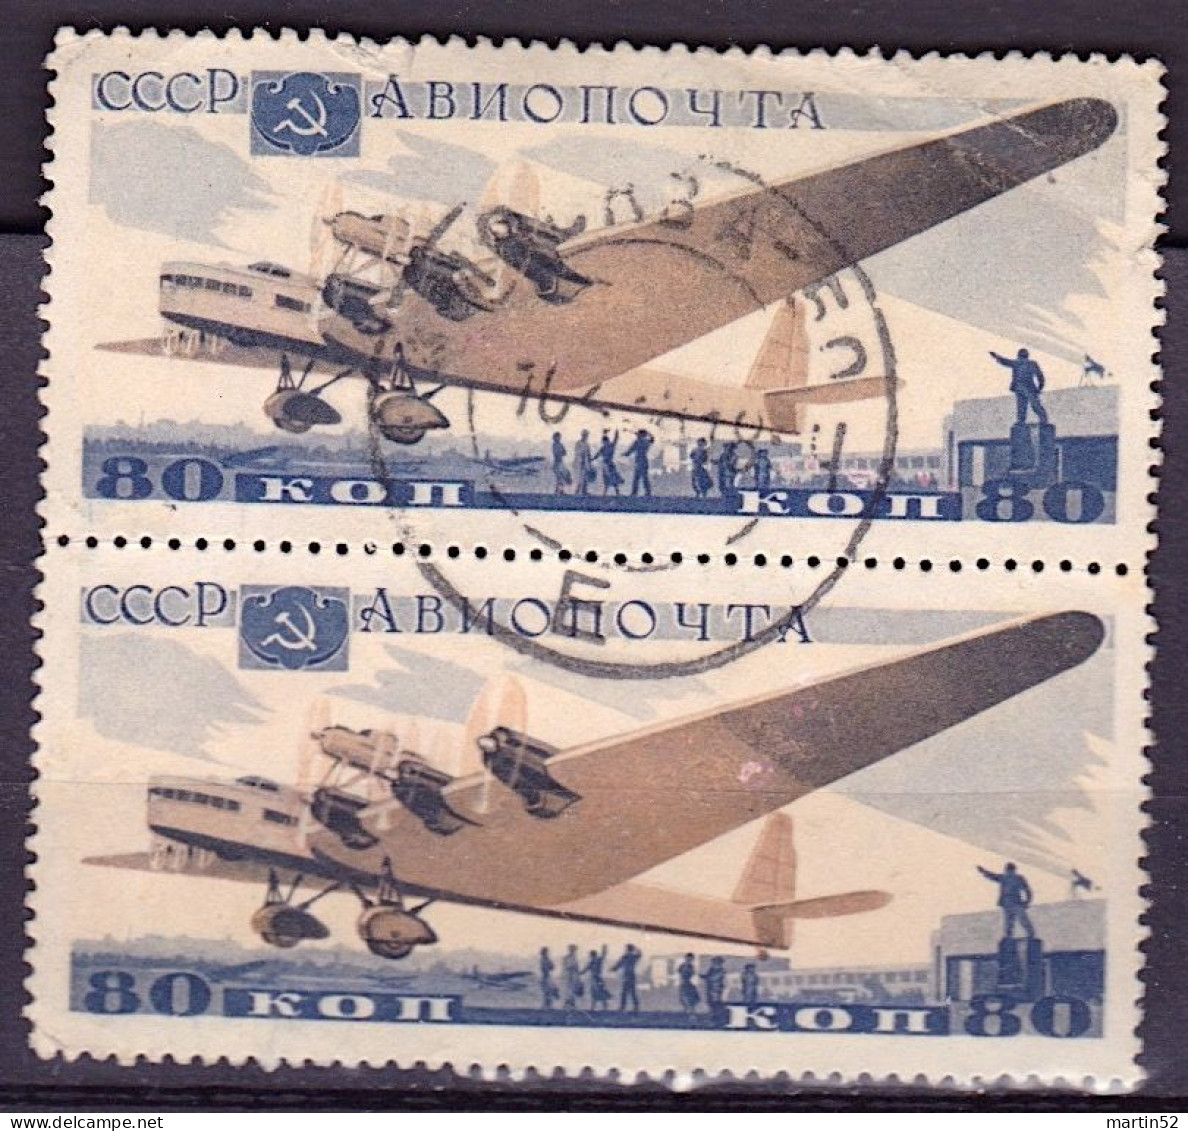 Sowiet-Union CCCP Russie URSS 1937: Antonov ANT-20 (80 Kop) Michel-N° 576 Im Paar Gestempelt Obliterée Used - Used Stamps